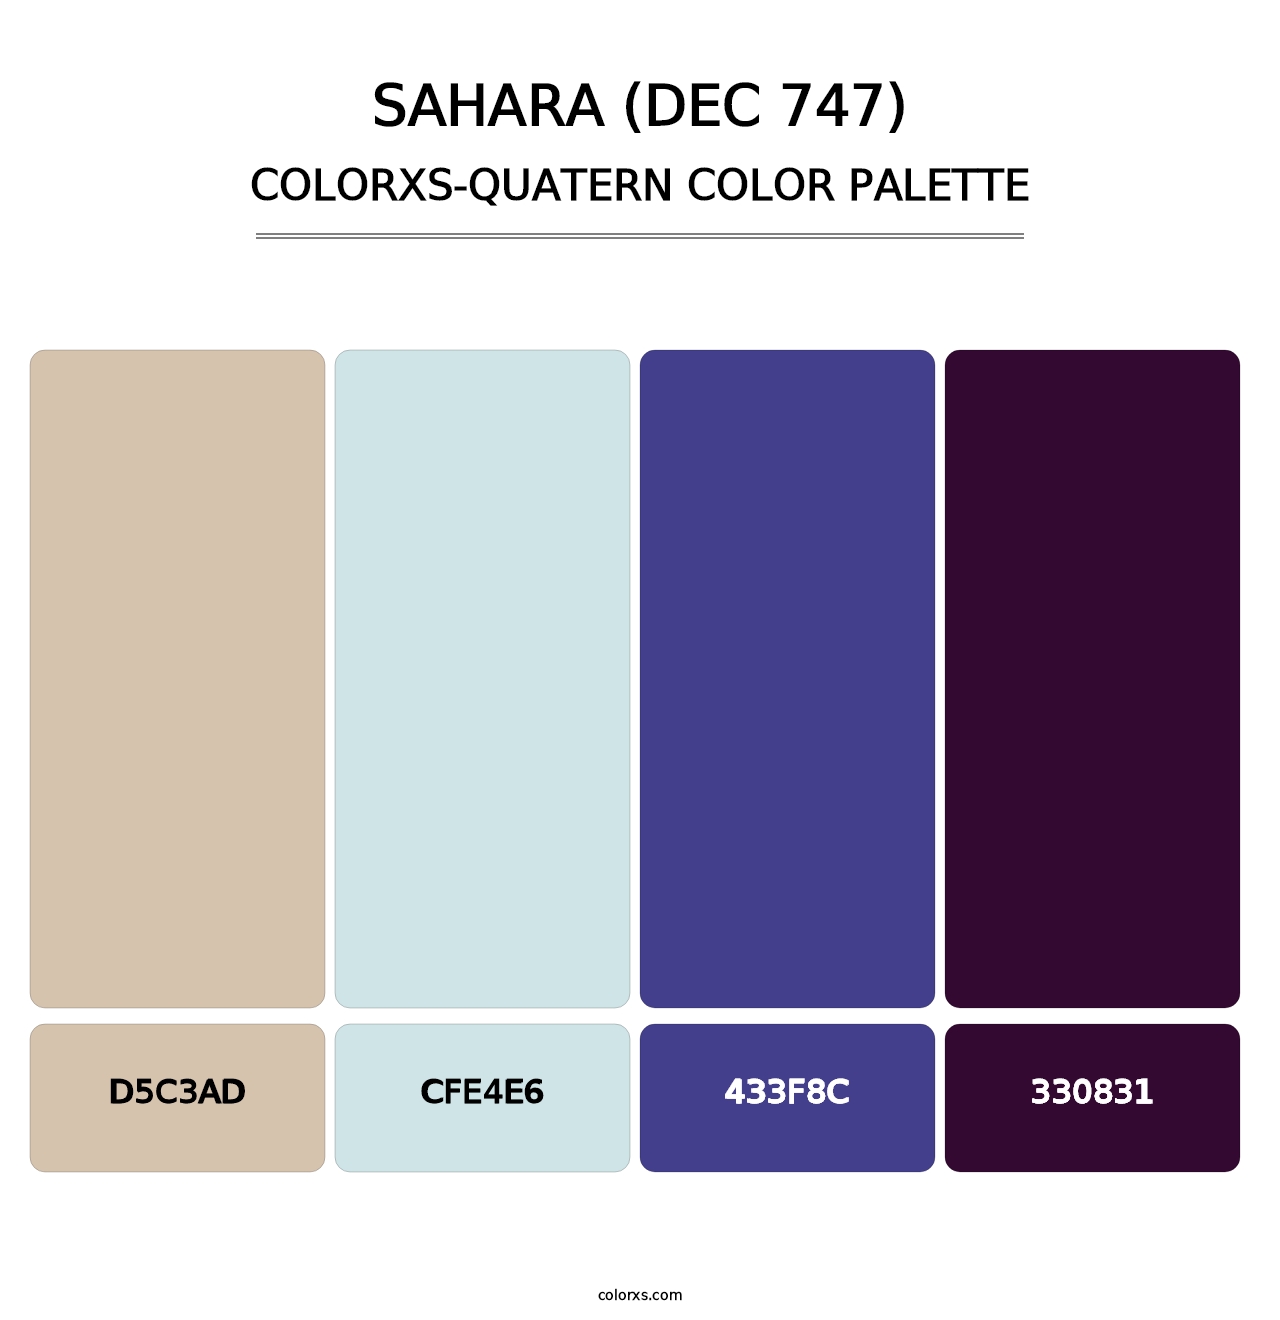 Sahara (DEC 747) - Colorxs Quatern Palette